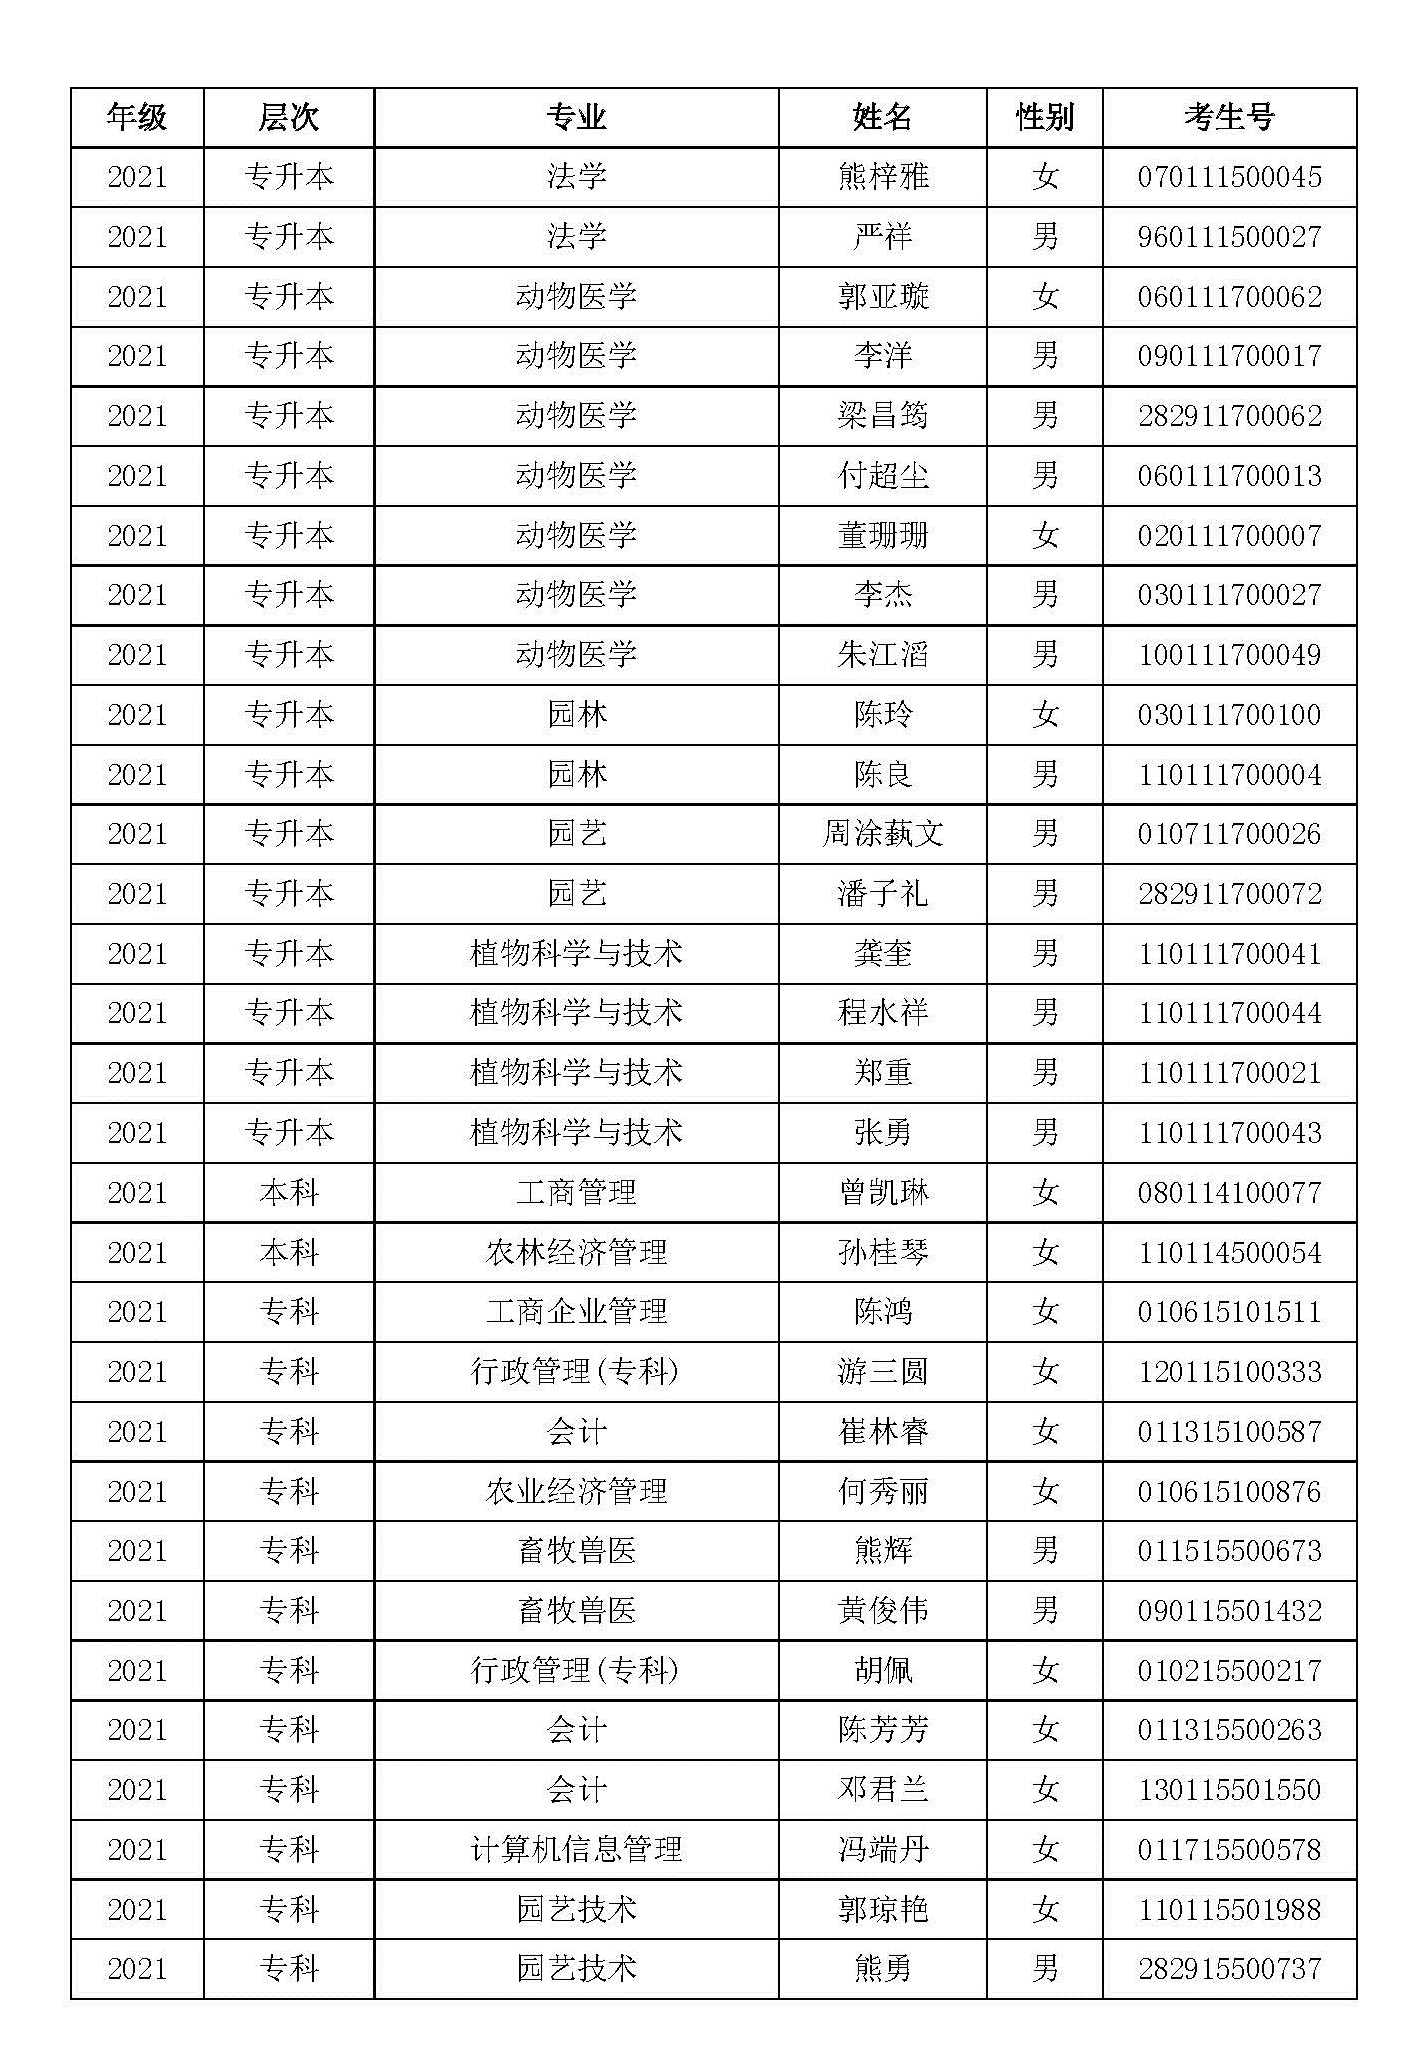 2021级华中农业大学成教已录取未分配站点学生名单公示